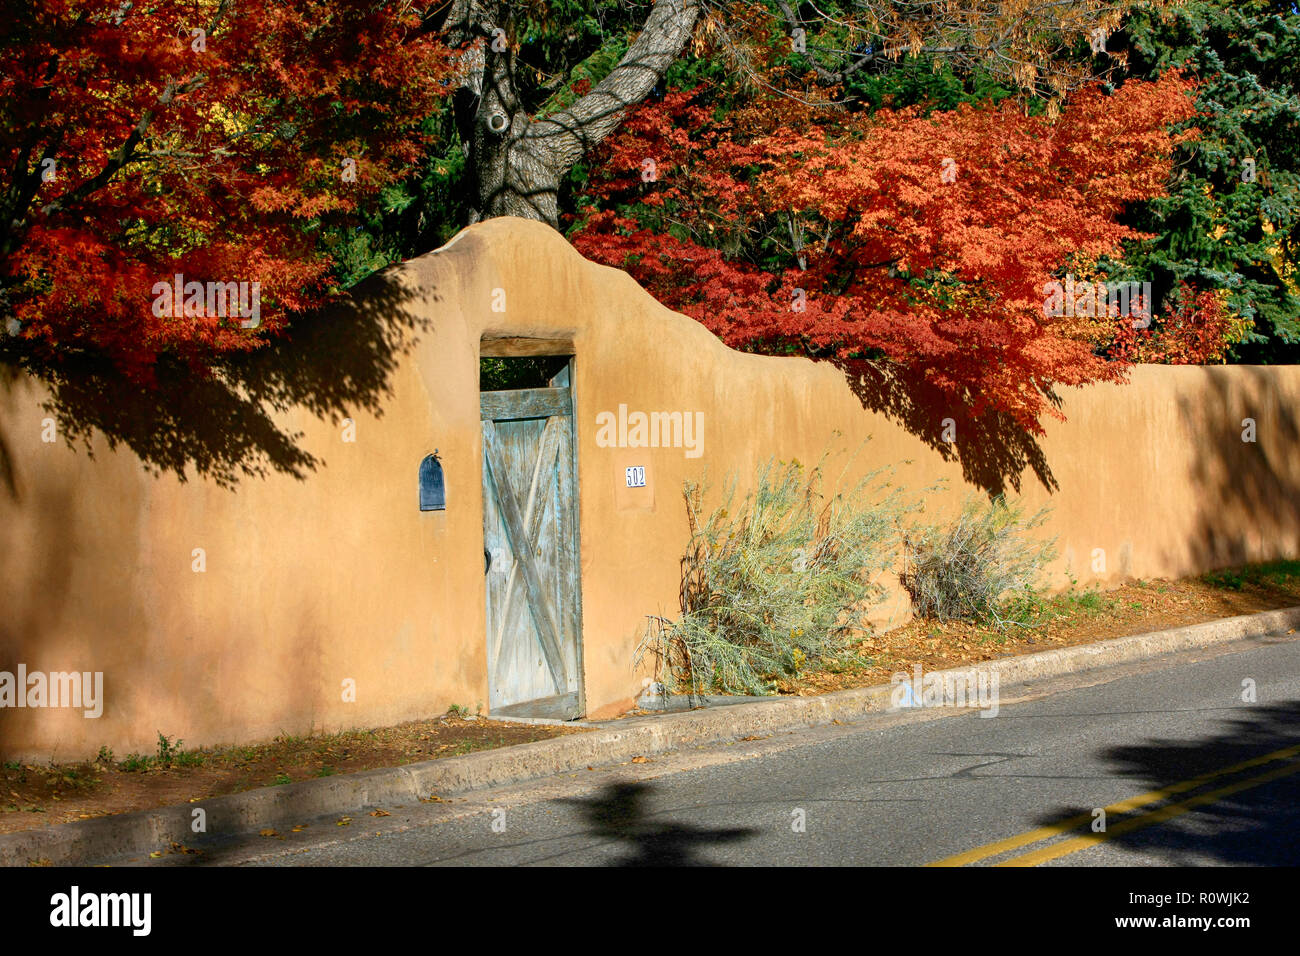 Couleurs d'automne d'oranges occulter ce style adobe passerelle sur Garcia rue Santa Fe, NM, États-Unis Banque D'Images